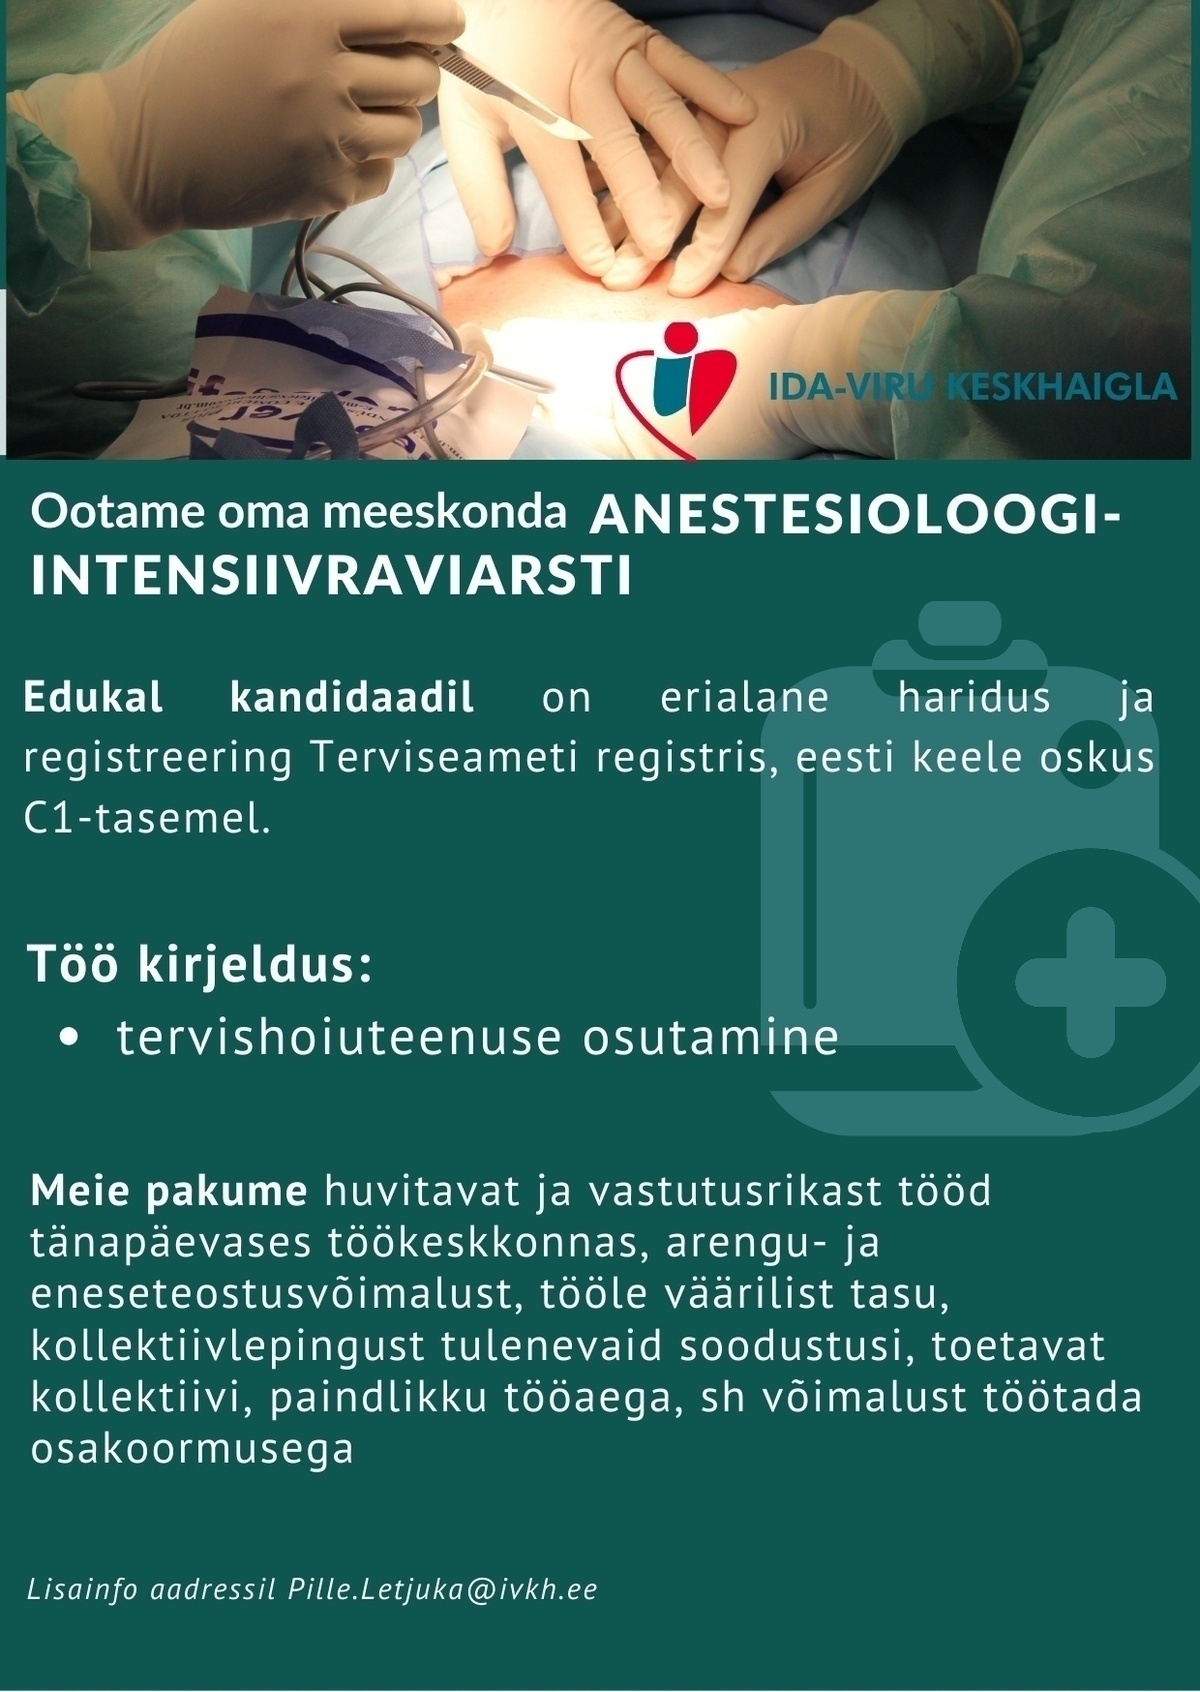 Ida-Viru Keskhaigla SA Anestesioloog-intensiivraviarst